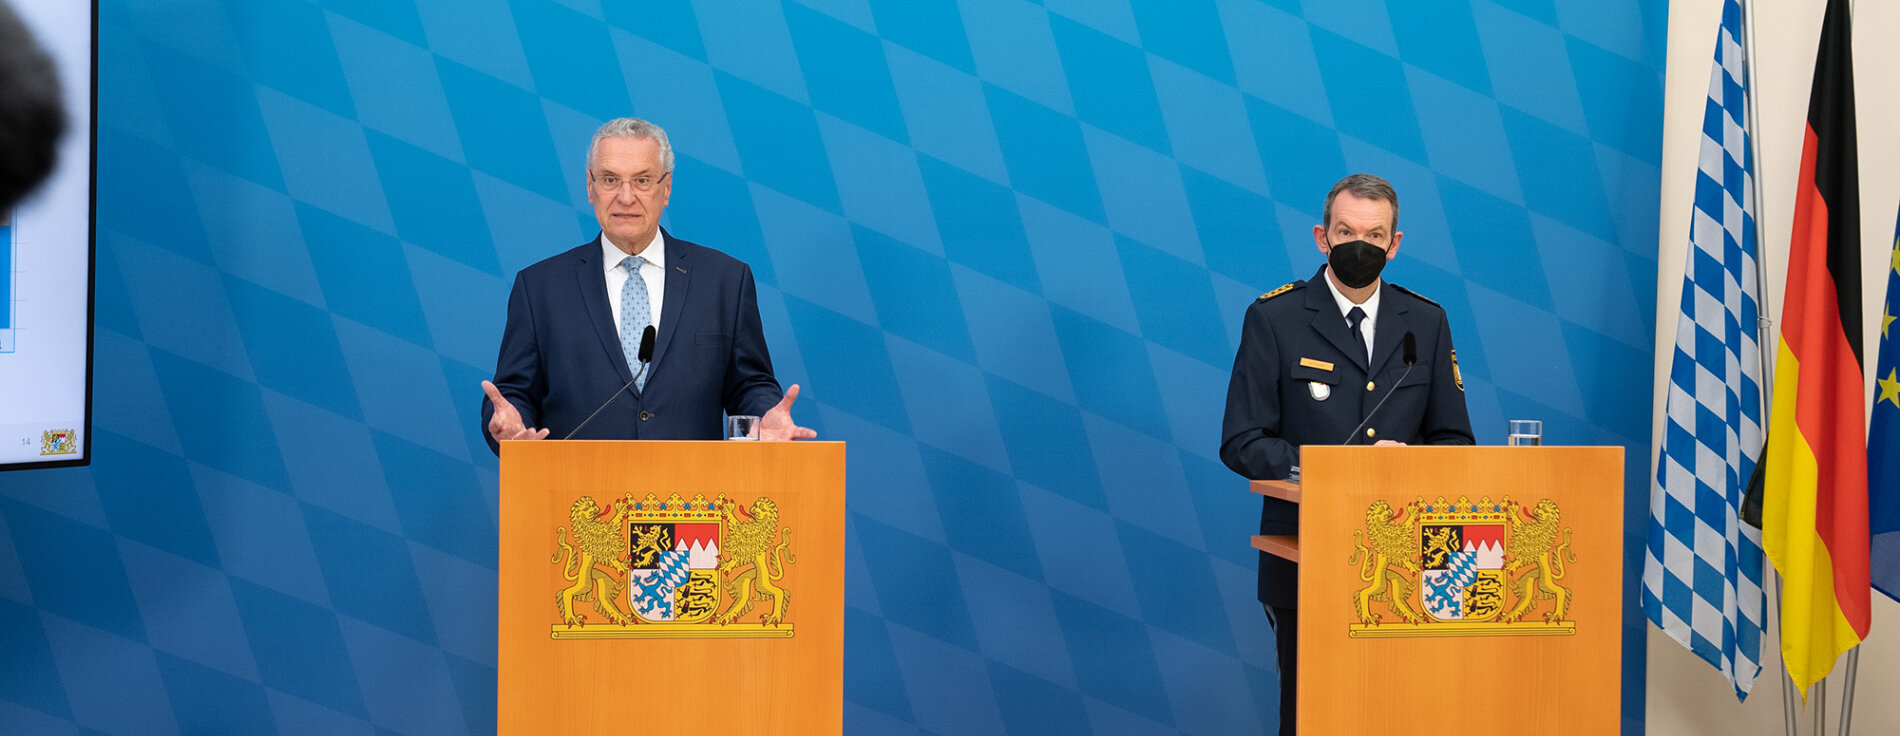 Innenminister Joachim Herrmann und Landespolizeipräsident Michael Schwald hinter Rednerpulten